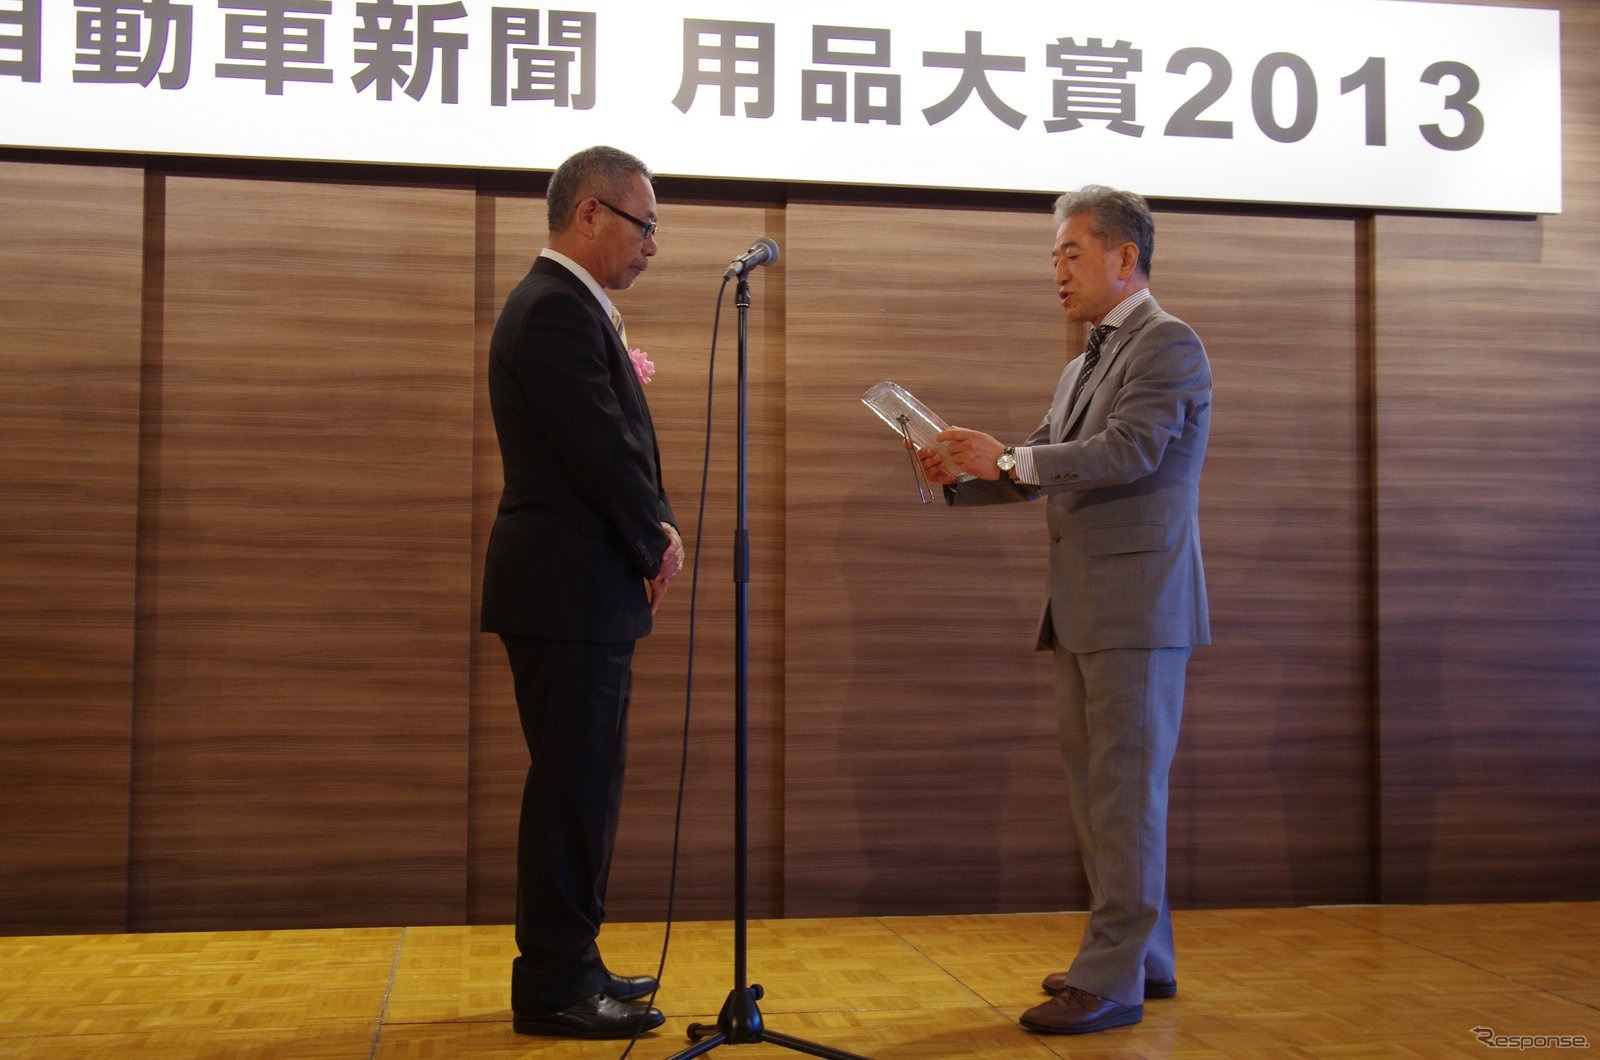 日刊自動車新聞用品大賞2013 の表彰式